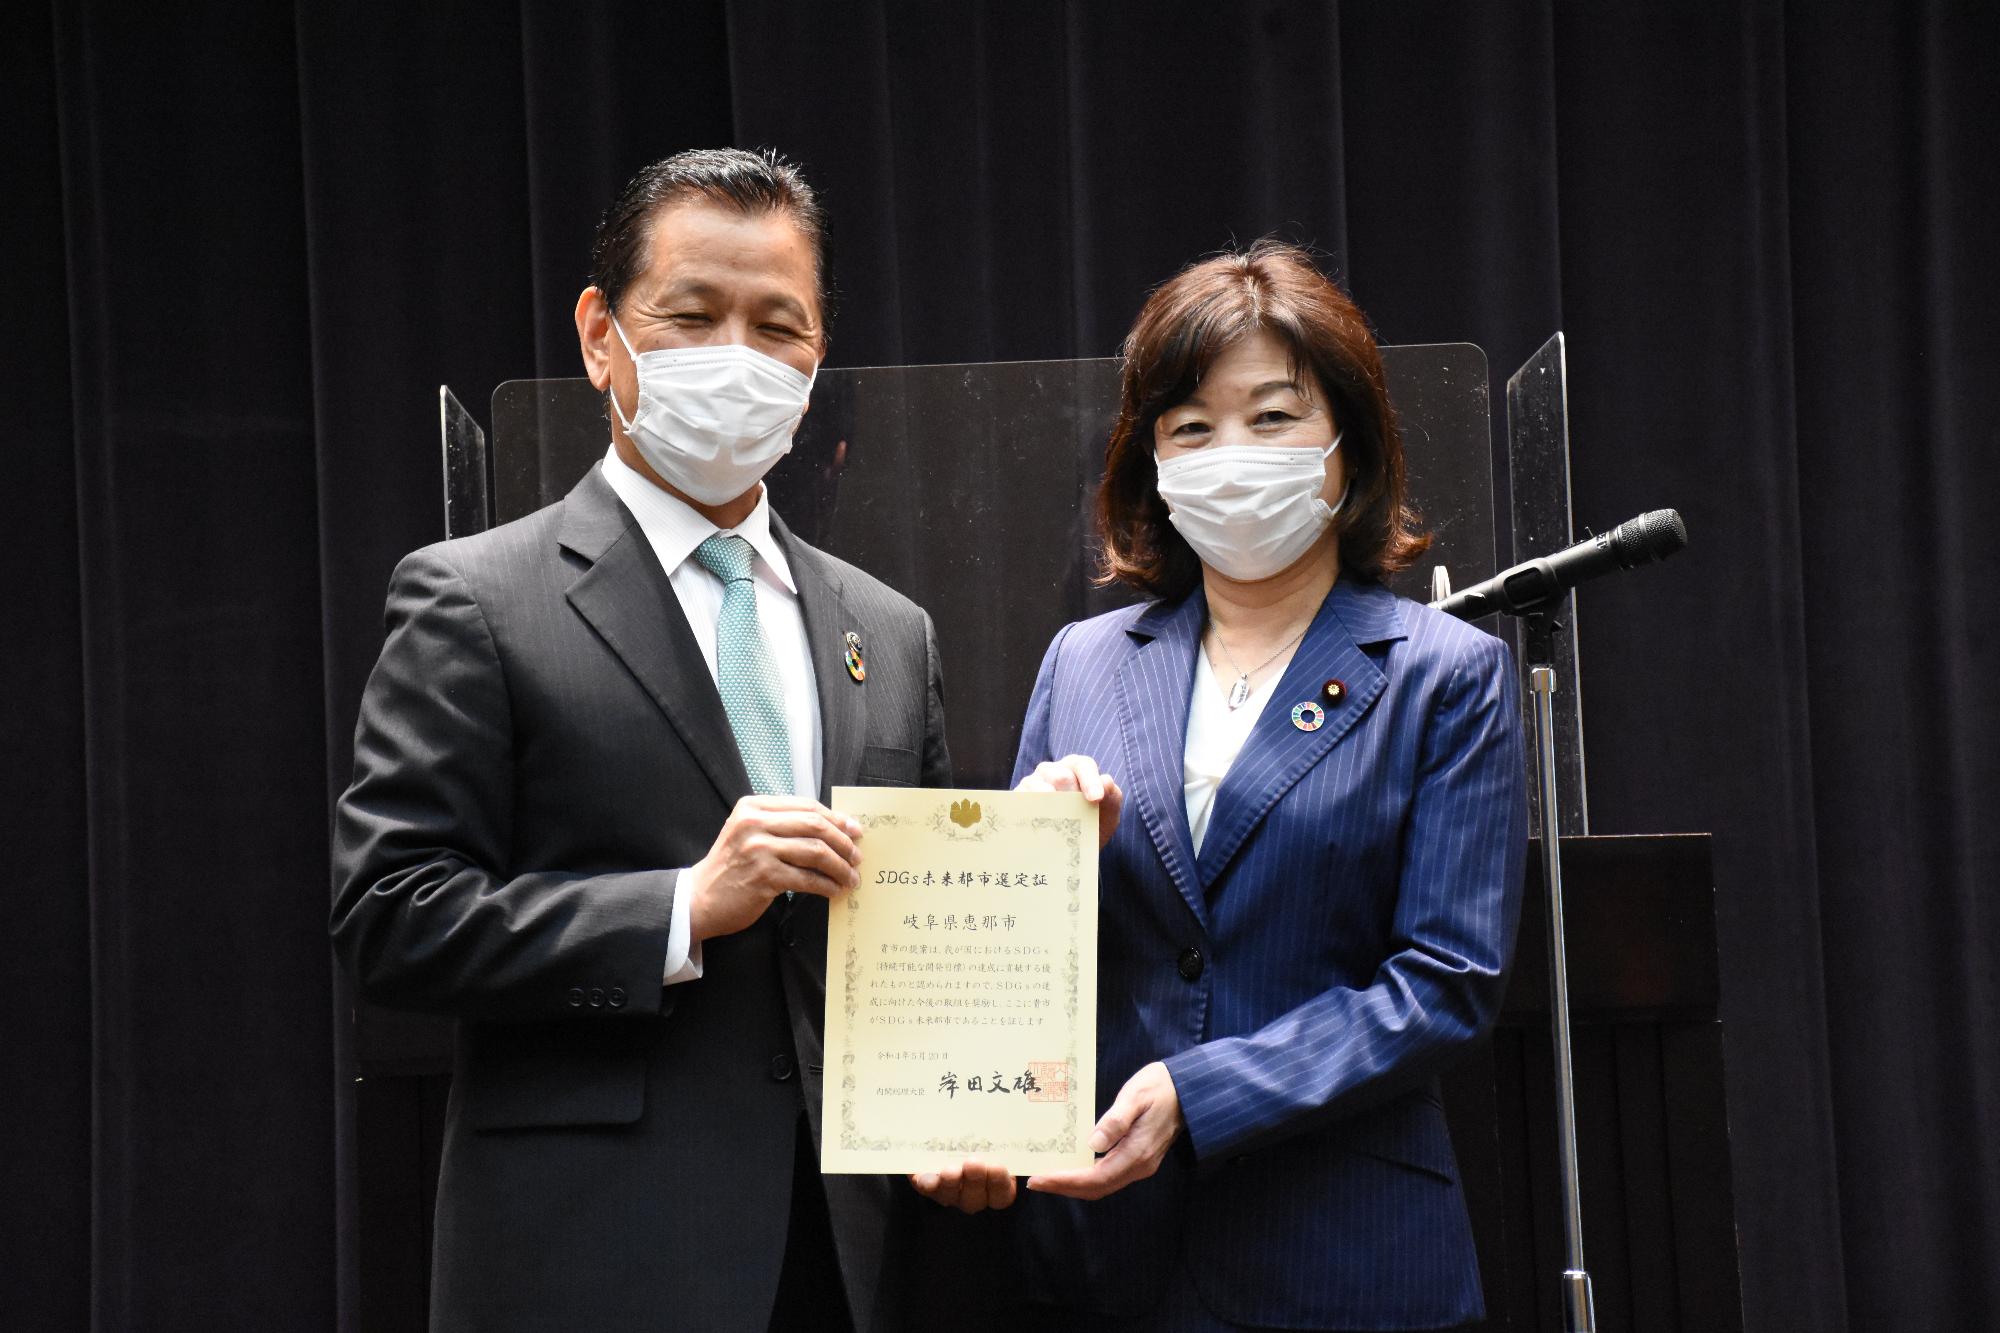 認定証を受け取る小坂市長と野田地方創生担当大臣